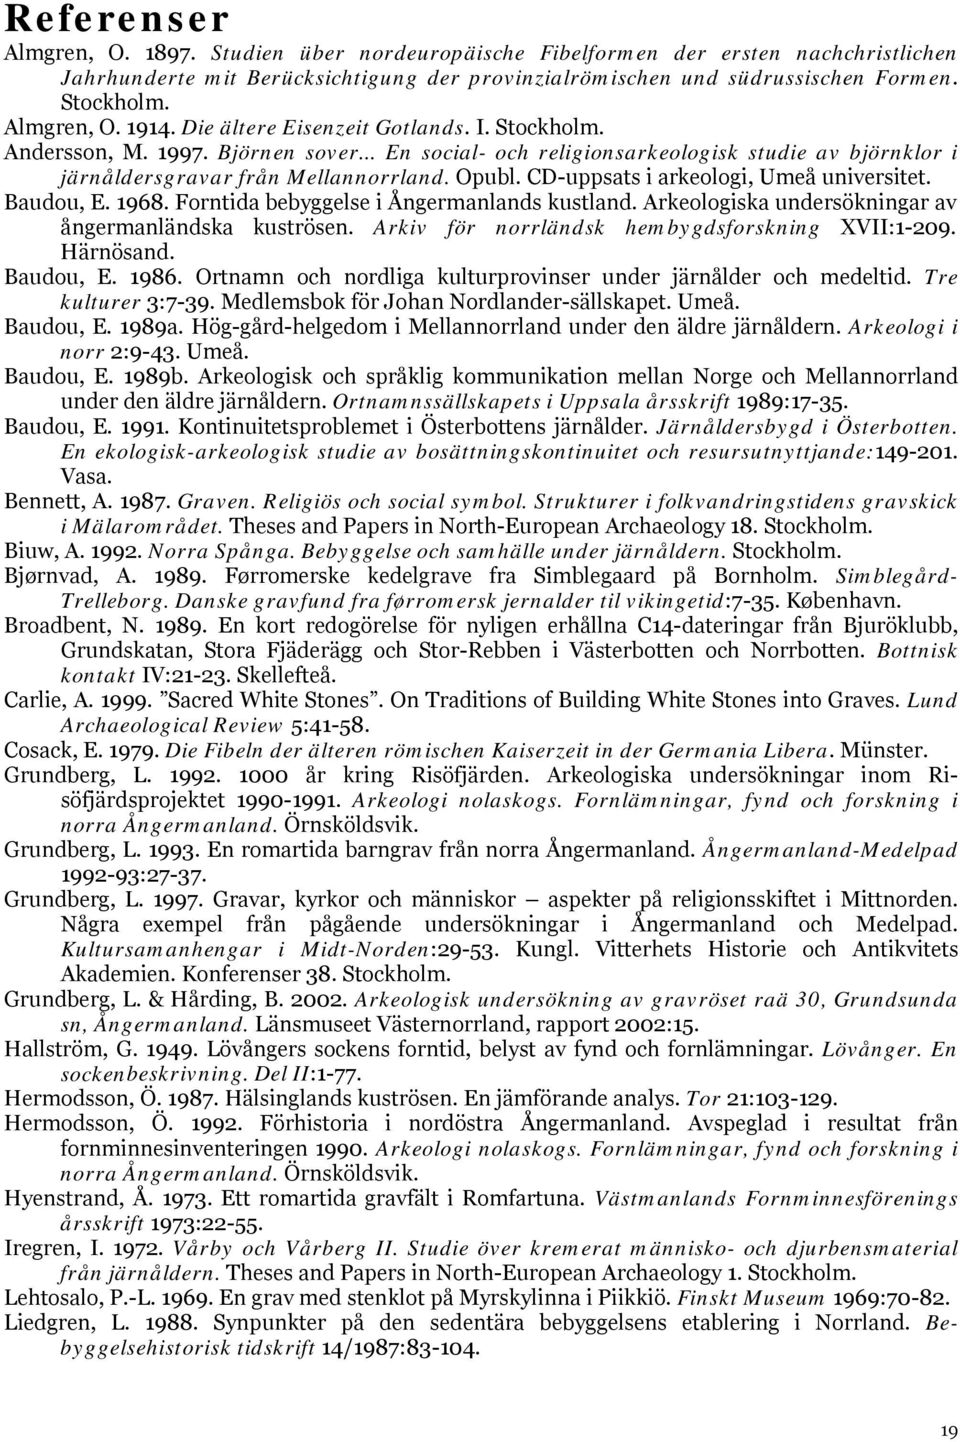 Opubl. CD-uppsats i arkeologi, Umeå universitet. Baudou, E. 1968. Forntida bebyggelse i Ångermanlands kustland. Arkeologiska undersökningar av ångermanländska kuströsen.